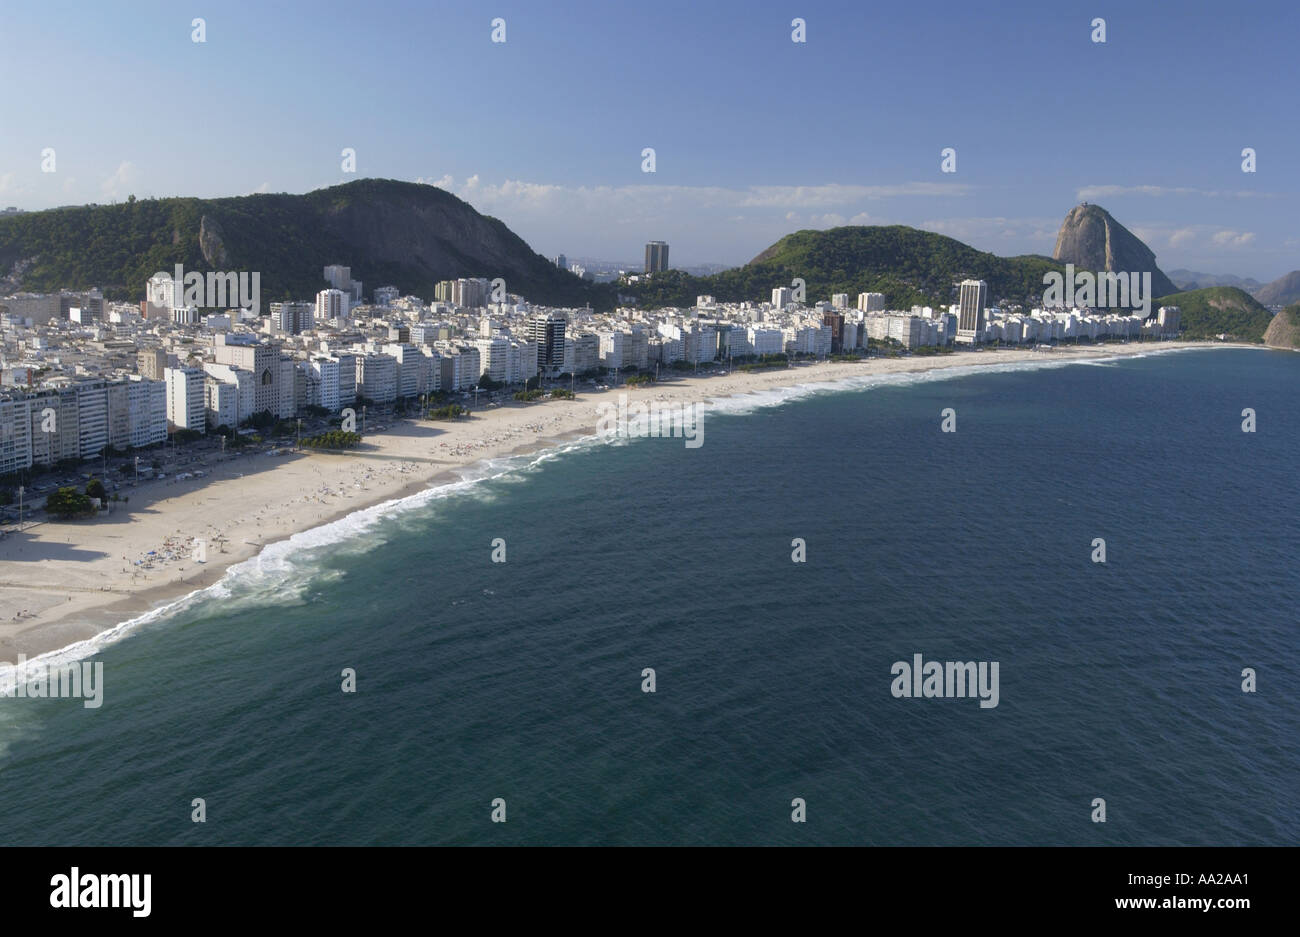 Aerial view of Copacobana Beach in Rio de Janeiro Brazil Stock Photo